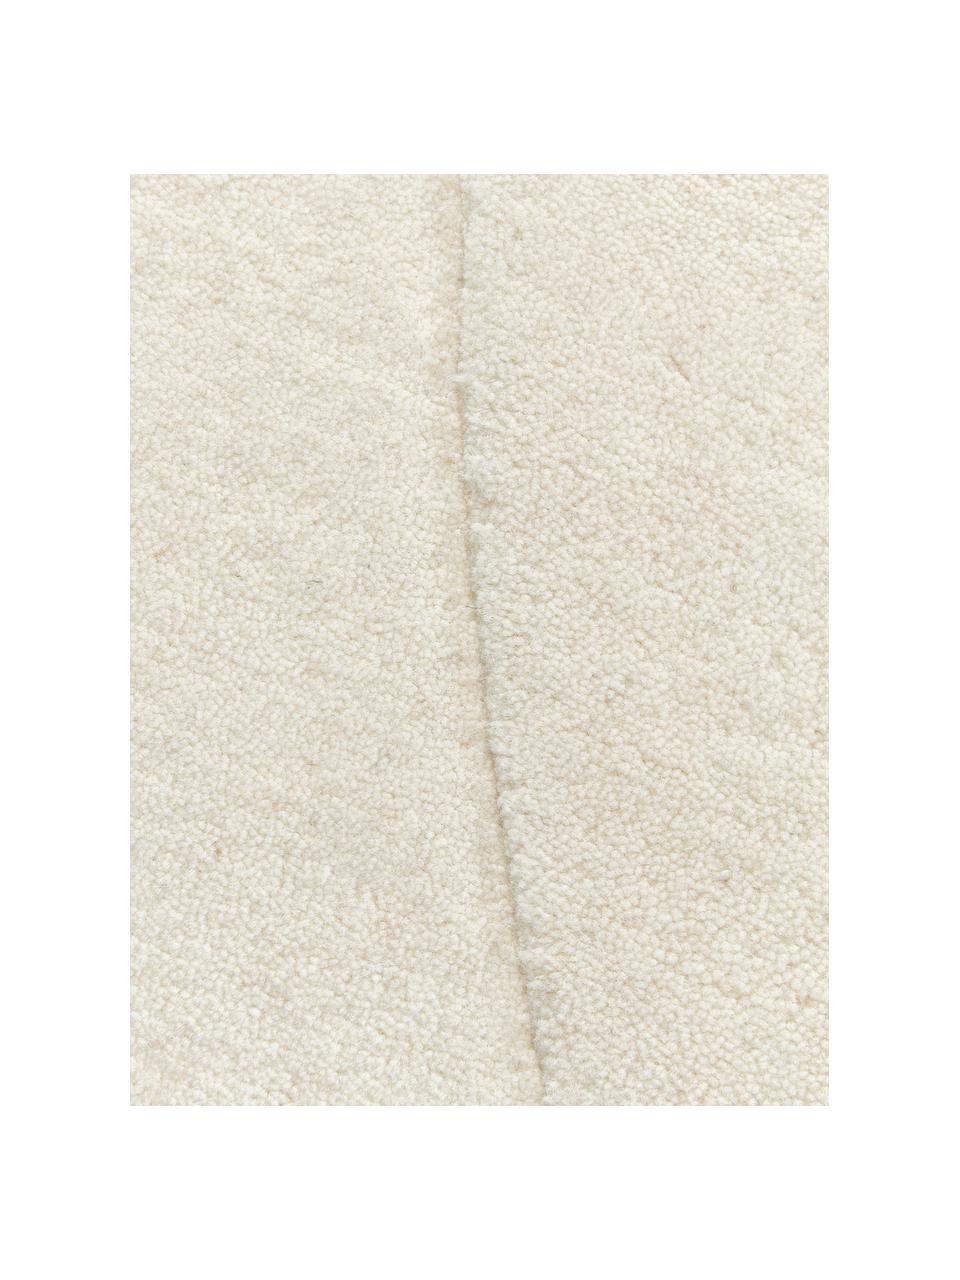 Tappeto in lana bianco crema taftato a mano dalla forma organica Kadey, Retro: 100% cotone Nel caso dei , Bianco crema, Larg. 150 x Lung. 230 cm (taglia M)